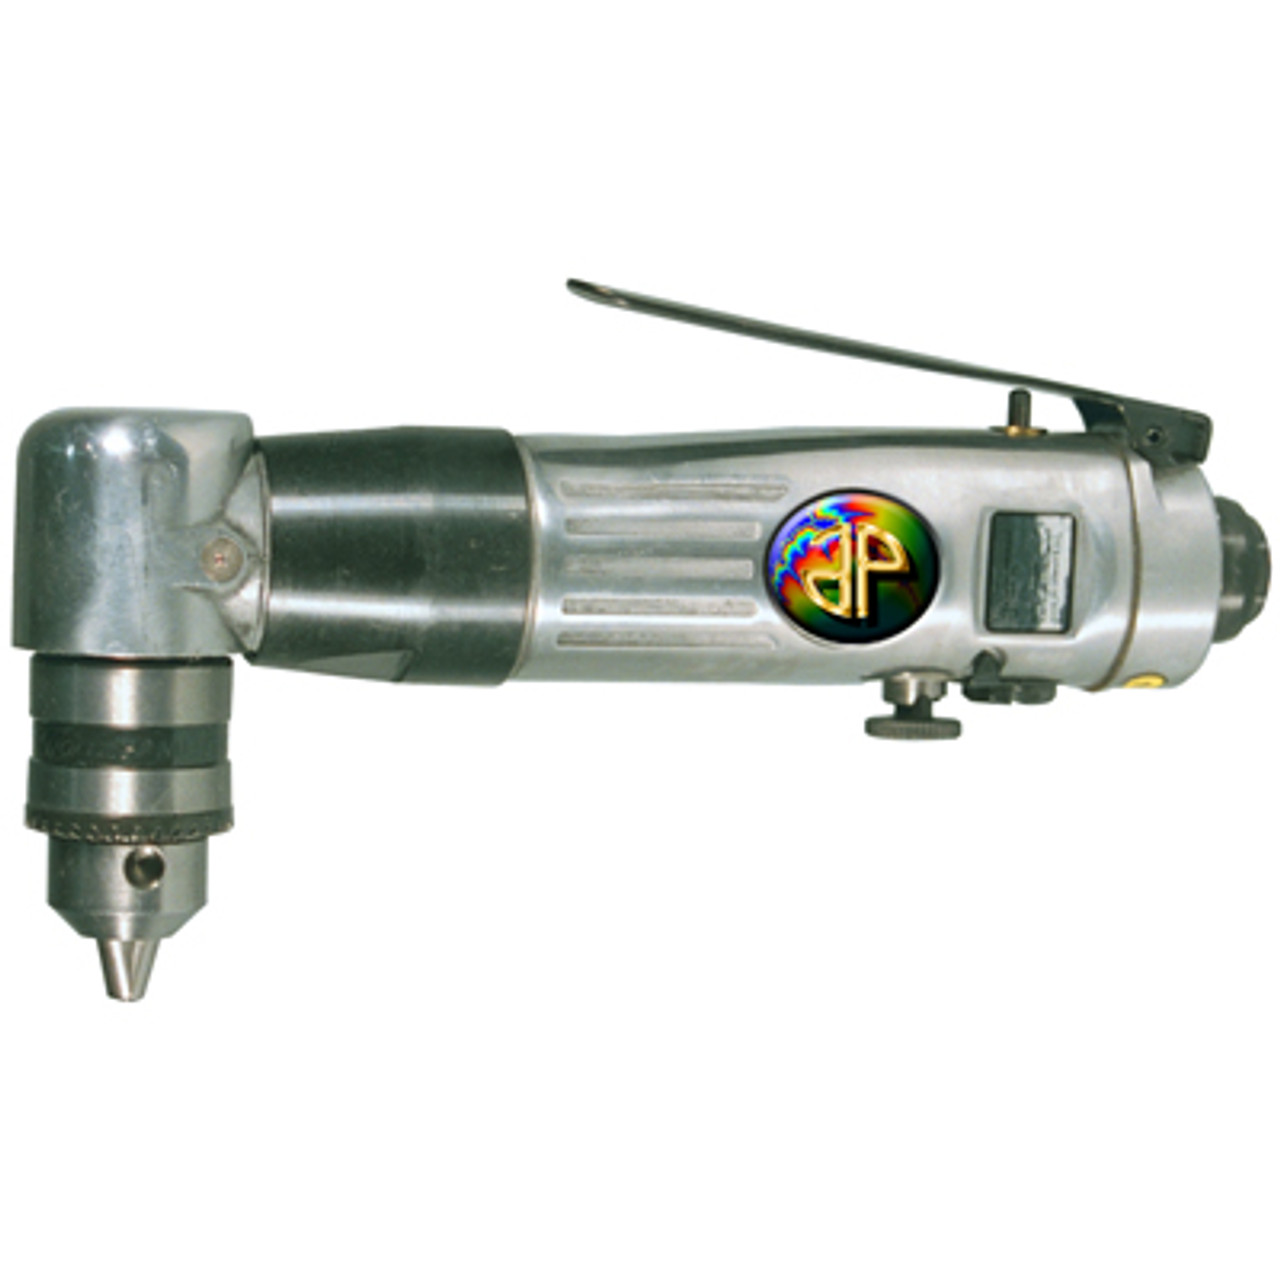 Ensemble d'outils pneumatiques M7 5 en 1, perceuse pneumatique à cliquet et  3 meuleuses pneumatiques (NE-0405-KIT)